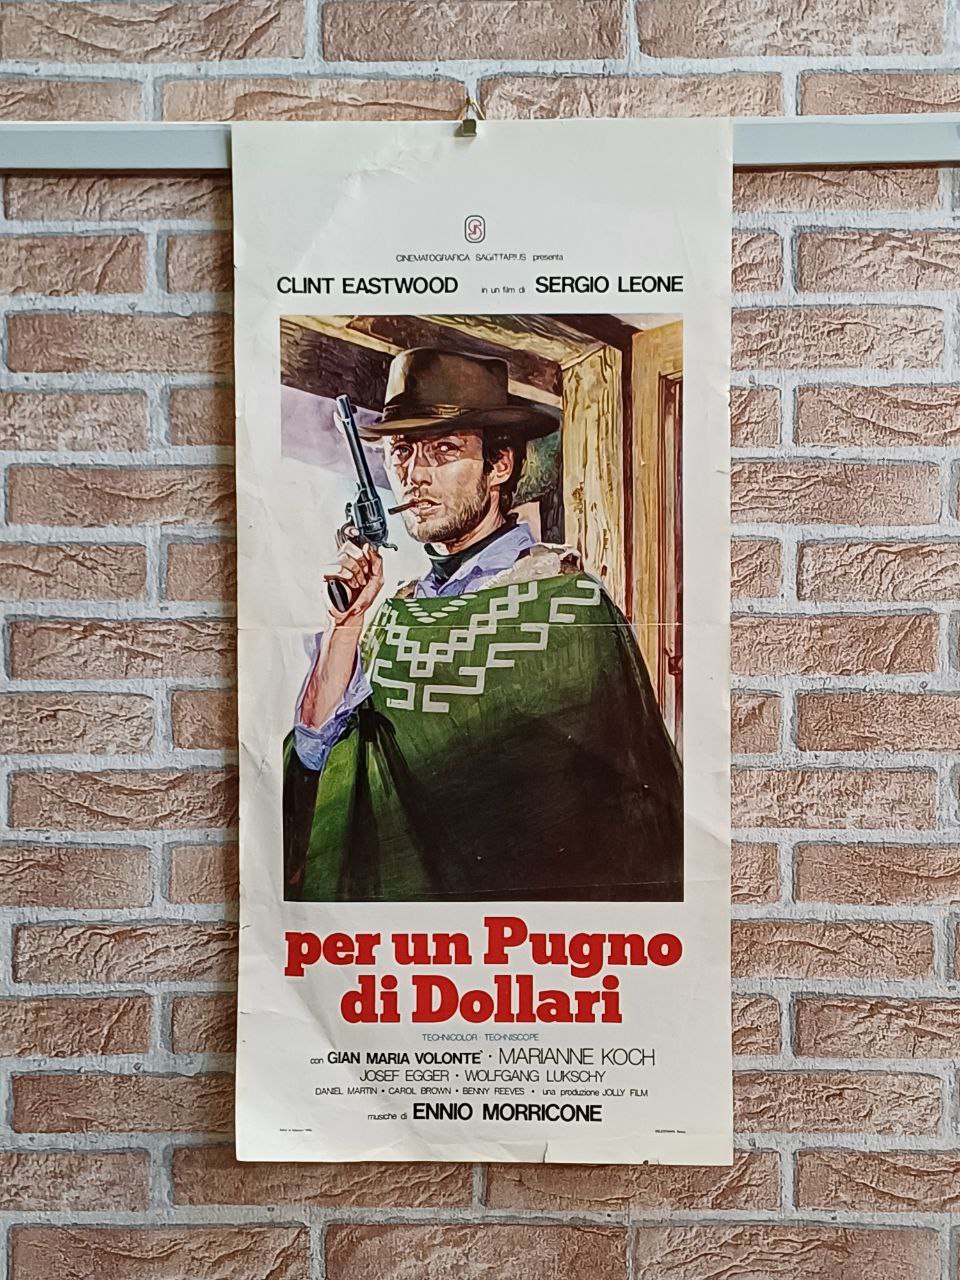 Locandina originale di cinema - "Per un pugno di dollari"